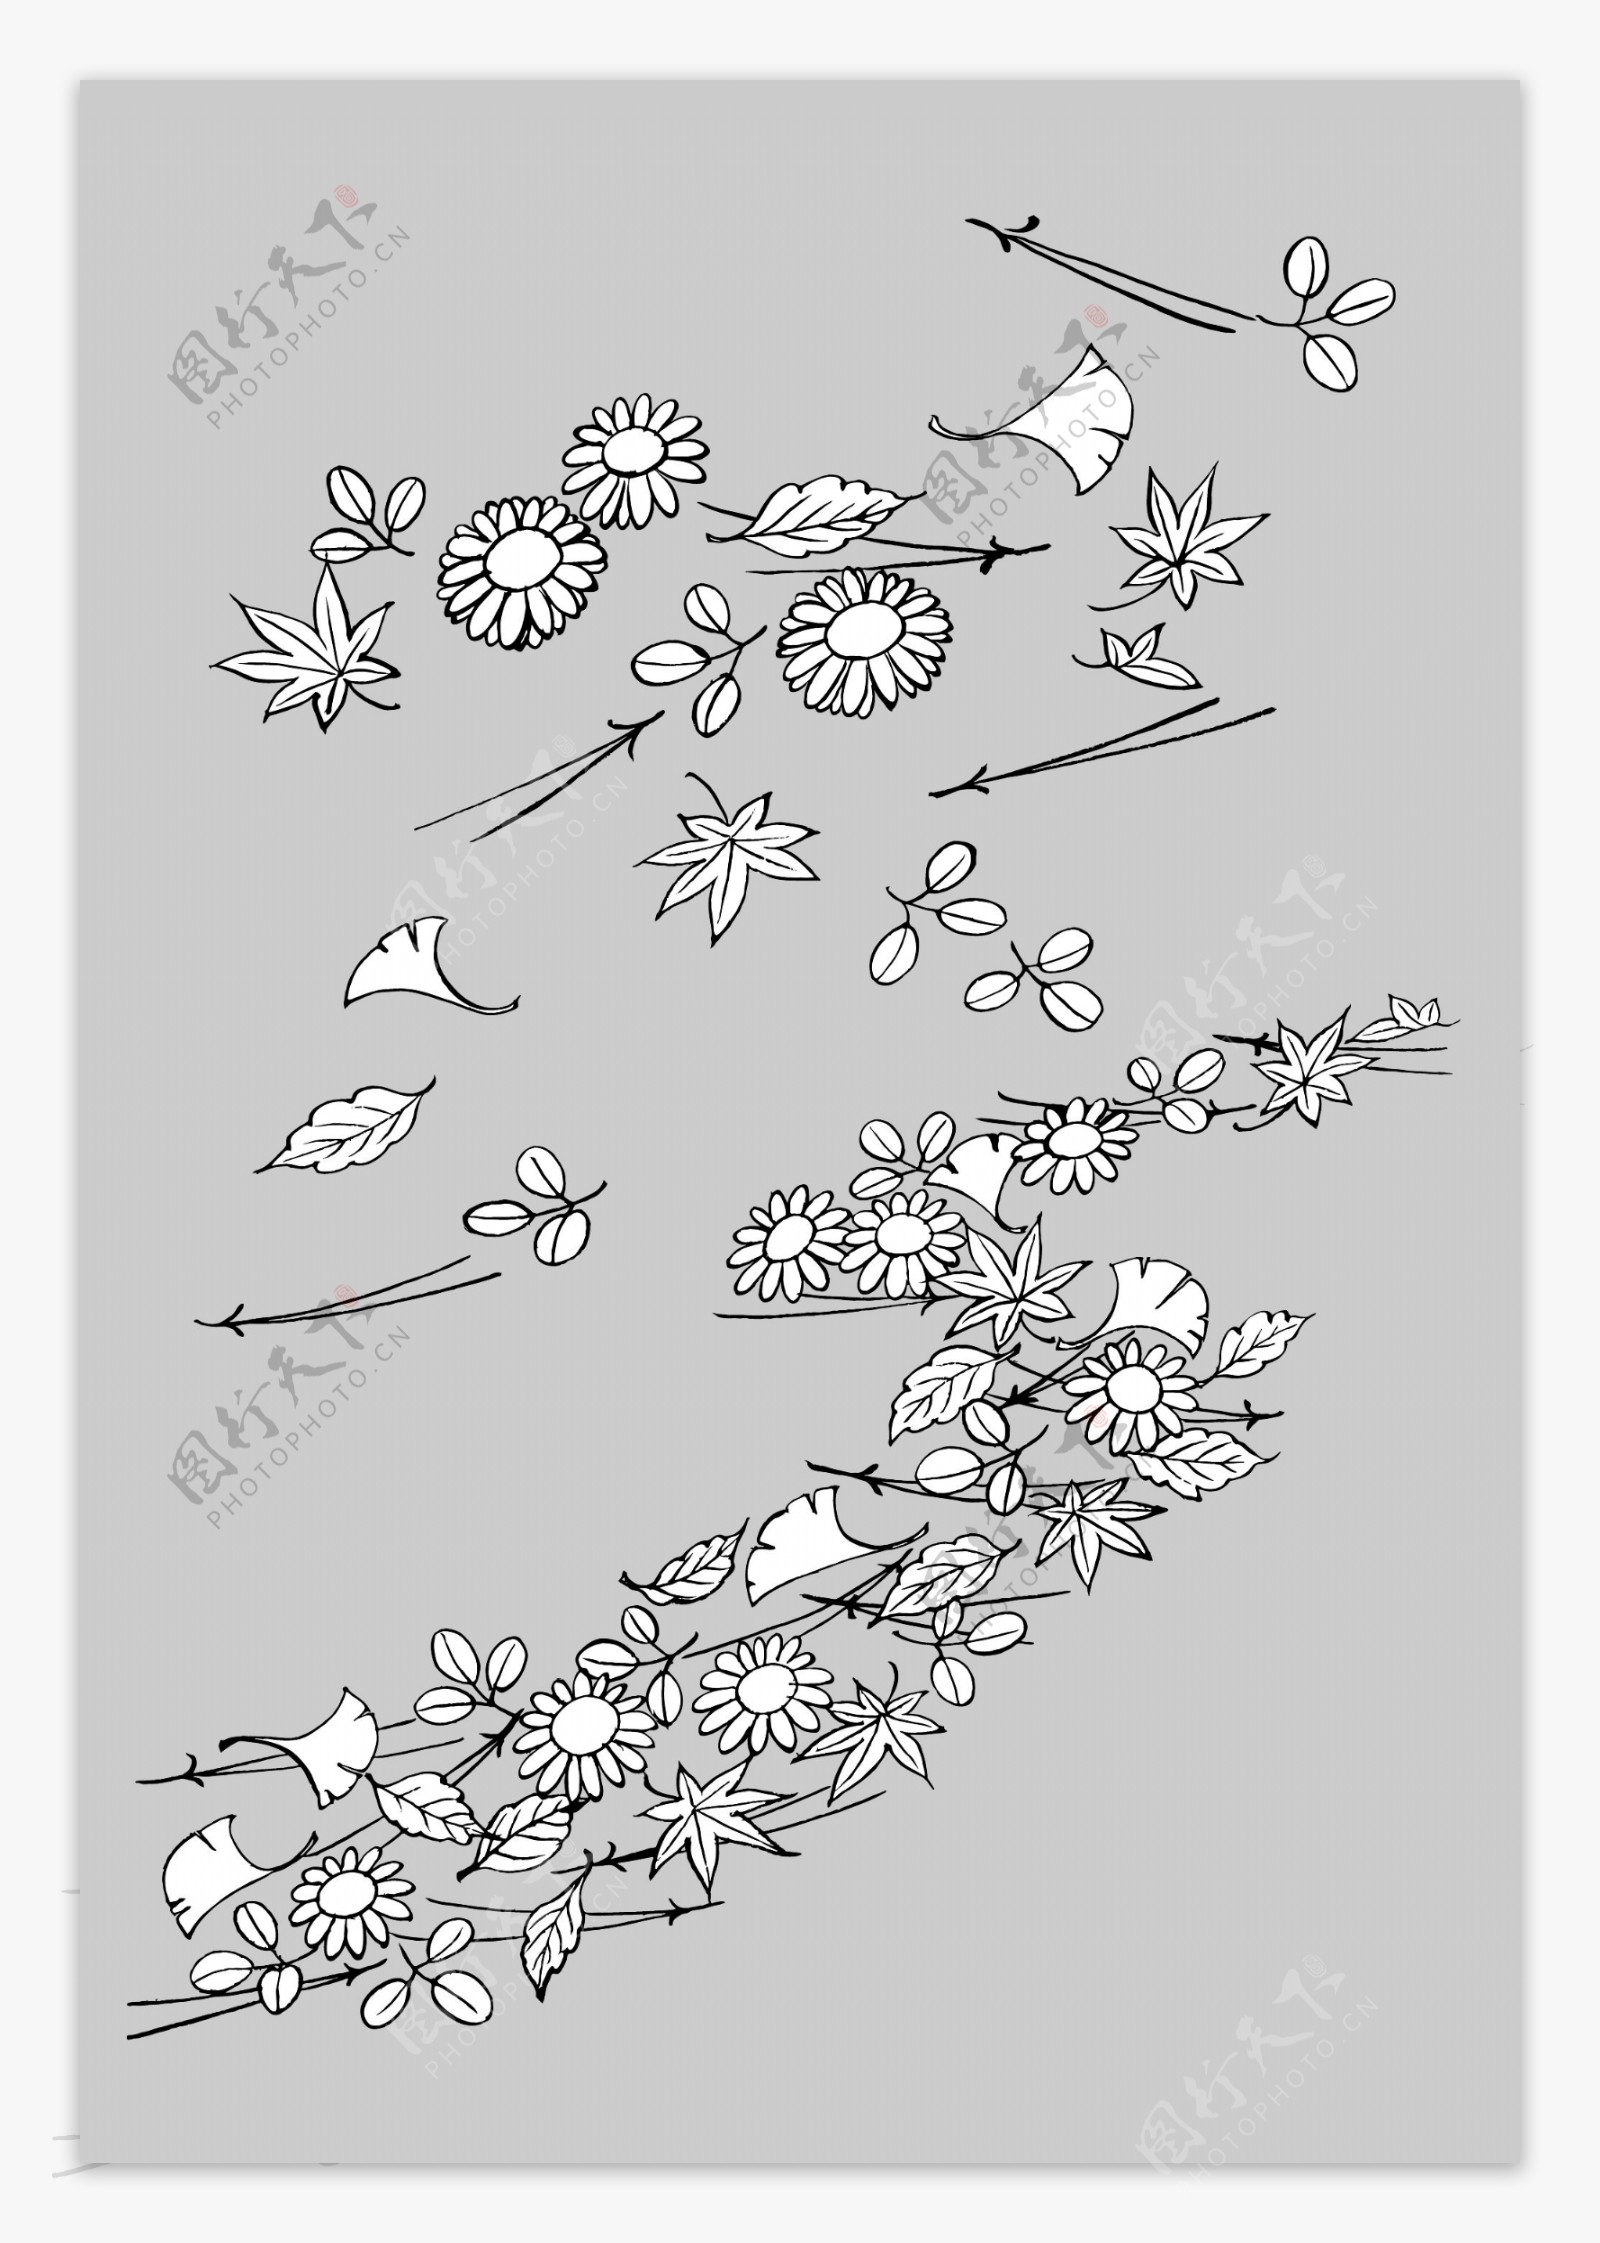 线描植物花卉矢量素材14树叶与花卉.